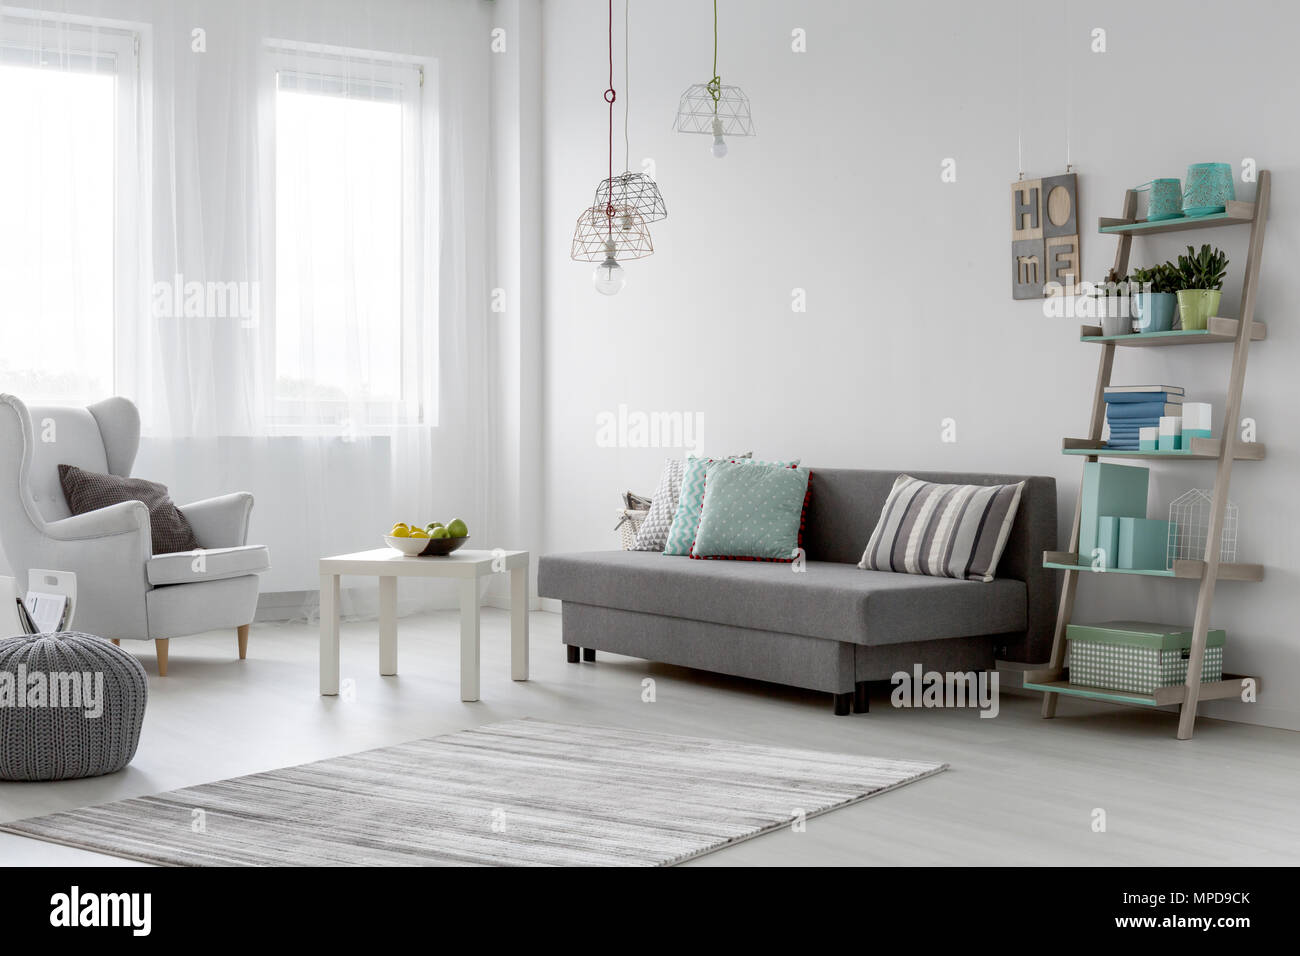 Arrangement minimaliste dans un intérieur lumineux télévision menthe Banque D'Images